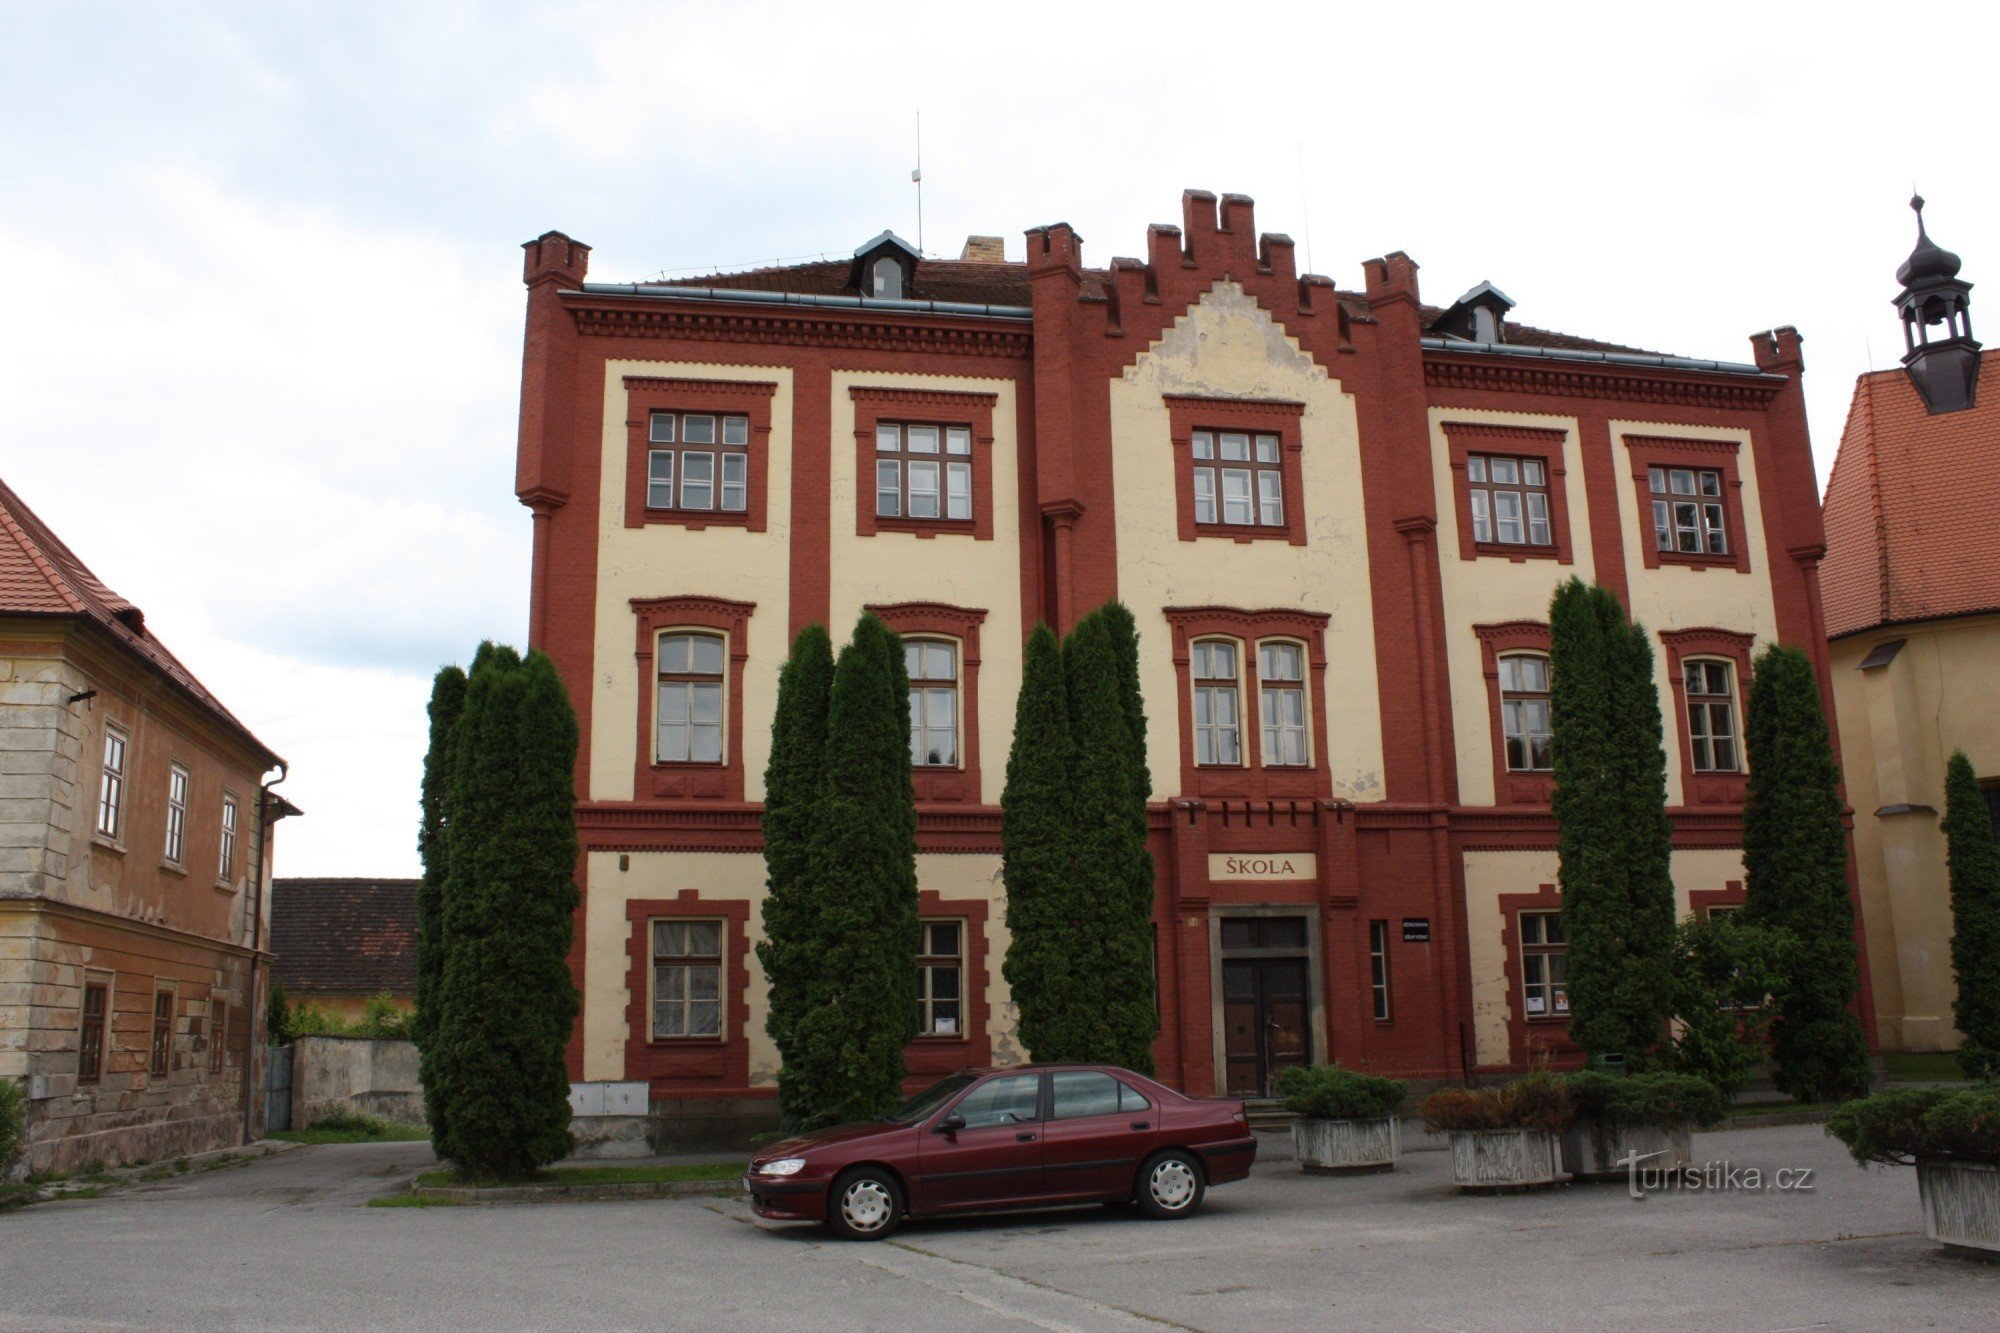 Tòa nhà tân Gothic của trường học cũ ở Netolice trong khu phố của nhà thờ St. Wenceslas